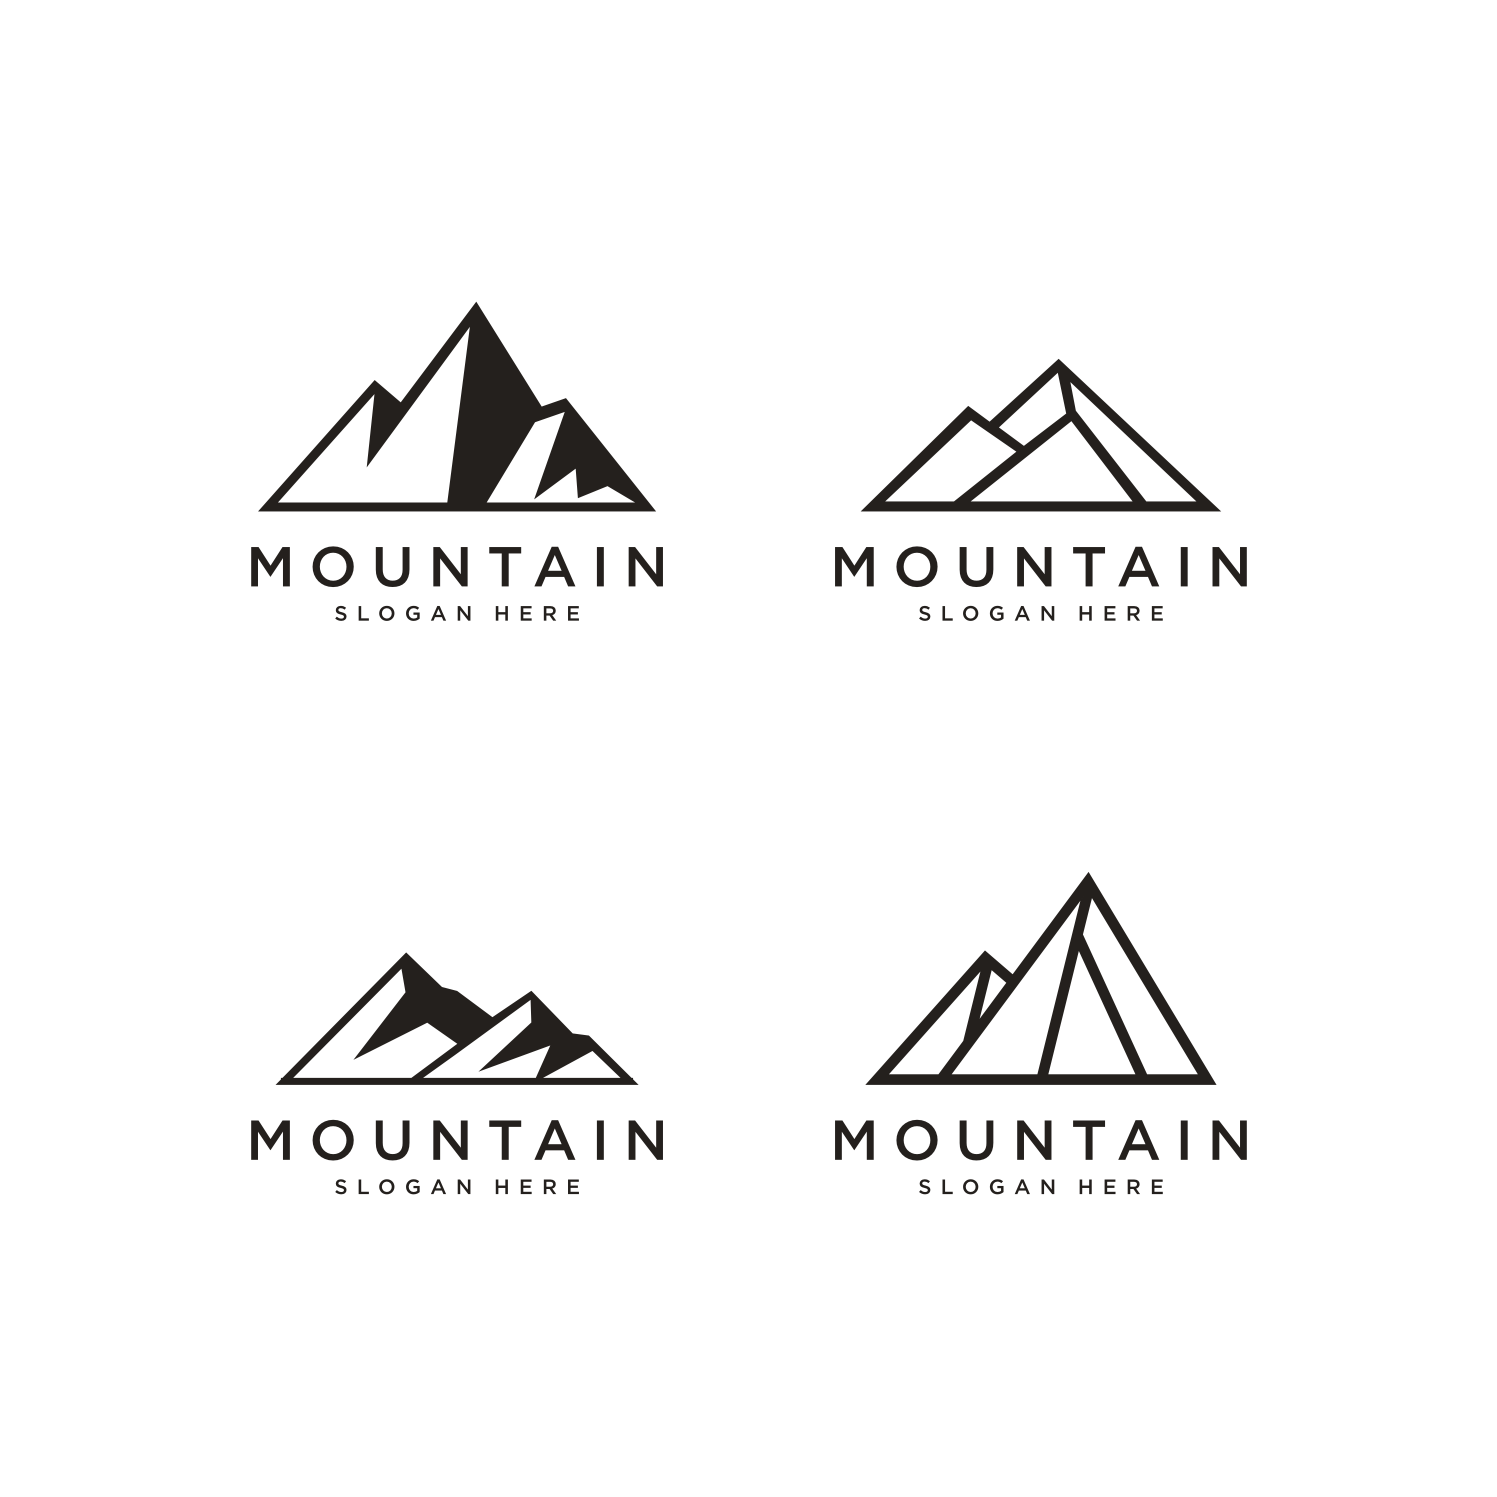 Set of Mountain Logo Vector Design Templates, 4 LOGO cover image.